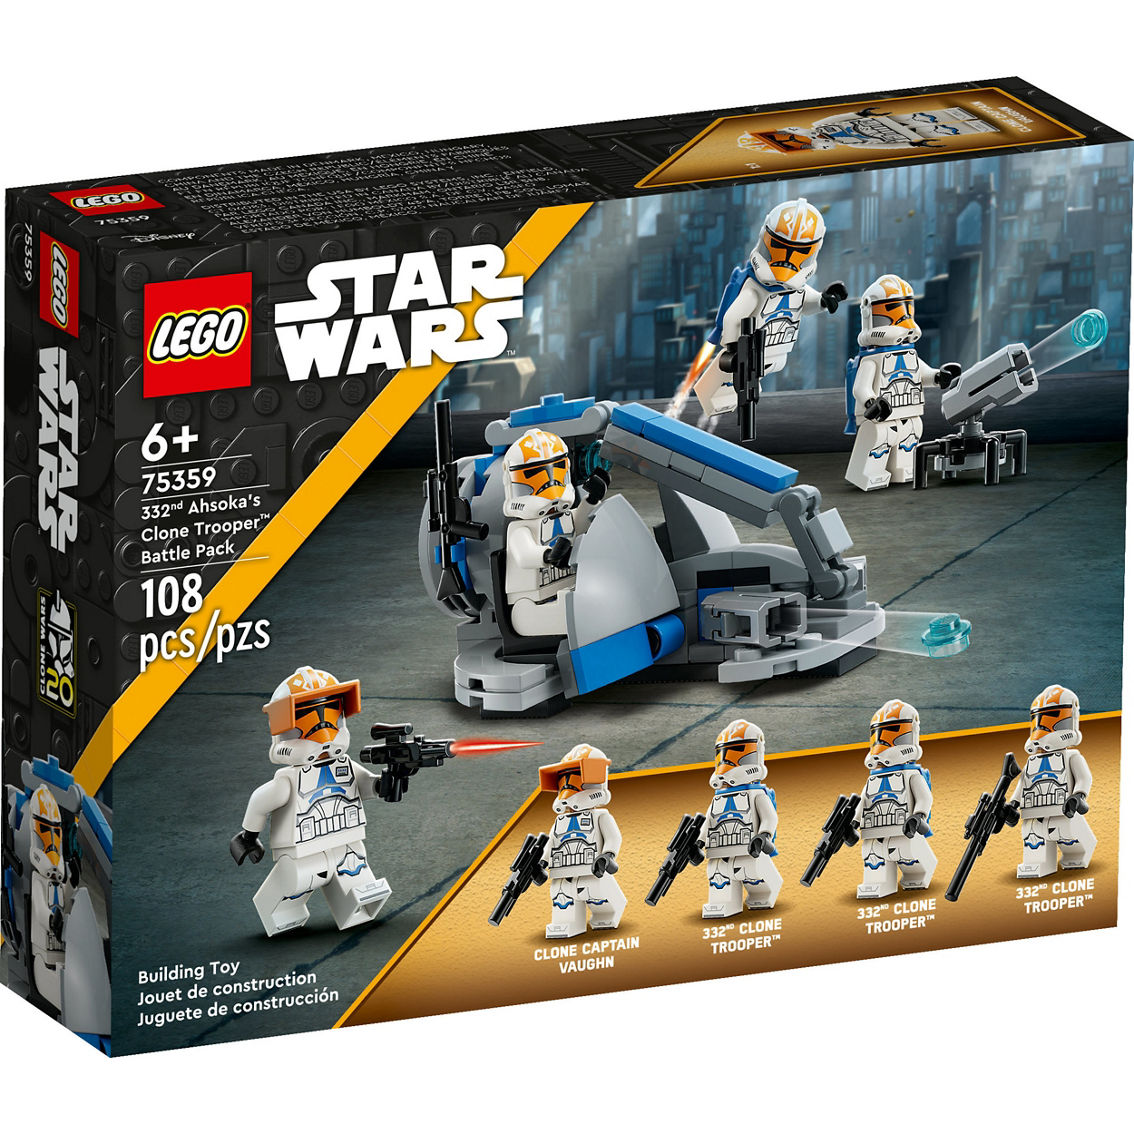 LEGO Star Wars 332nd Ahsoka's Clone Trooper Battle Pack 75359 - Image 2 of 7